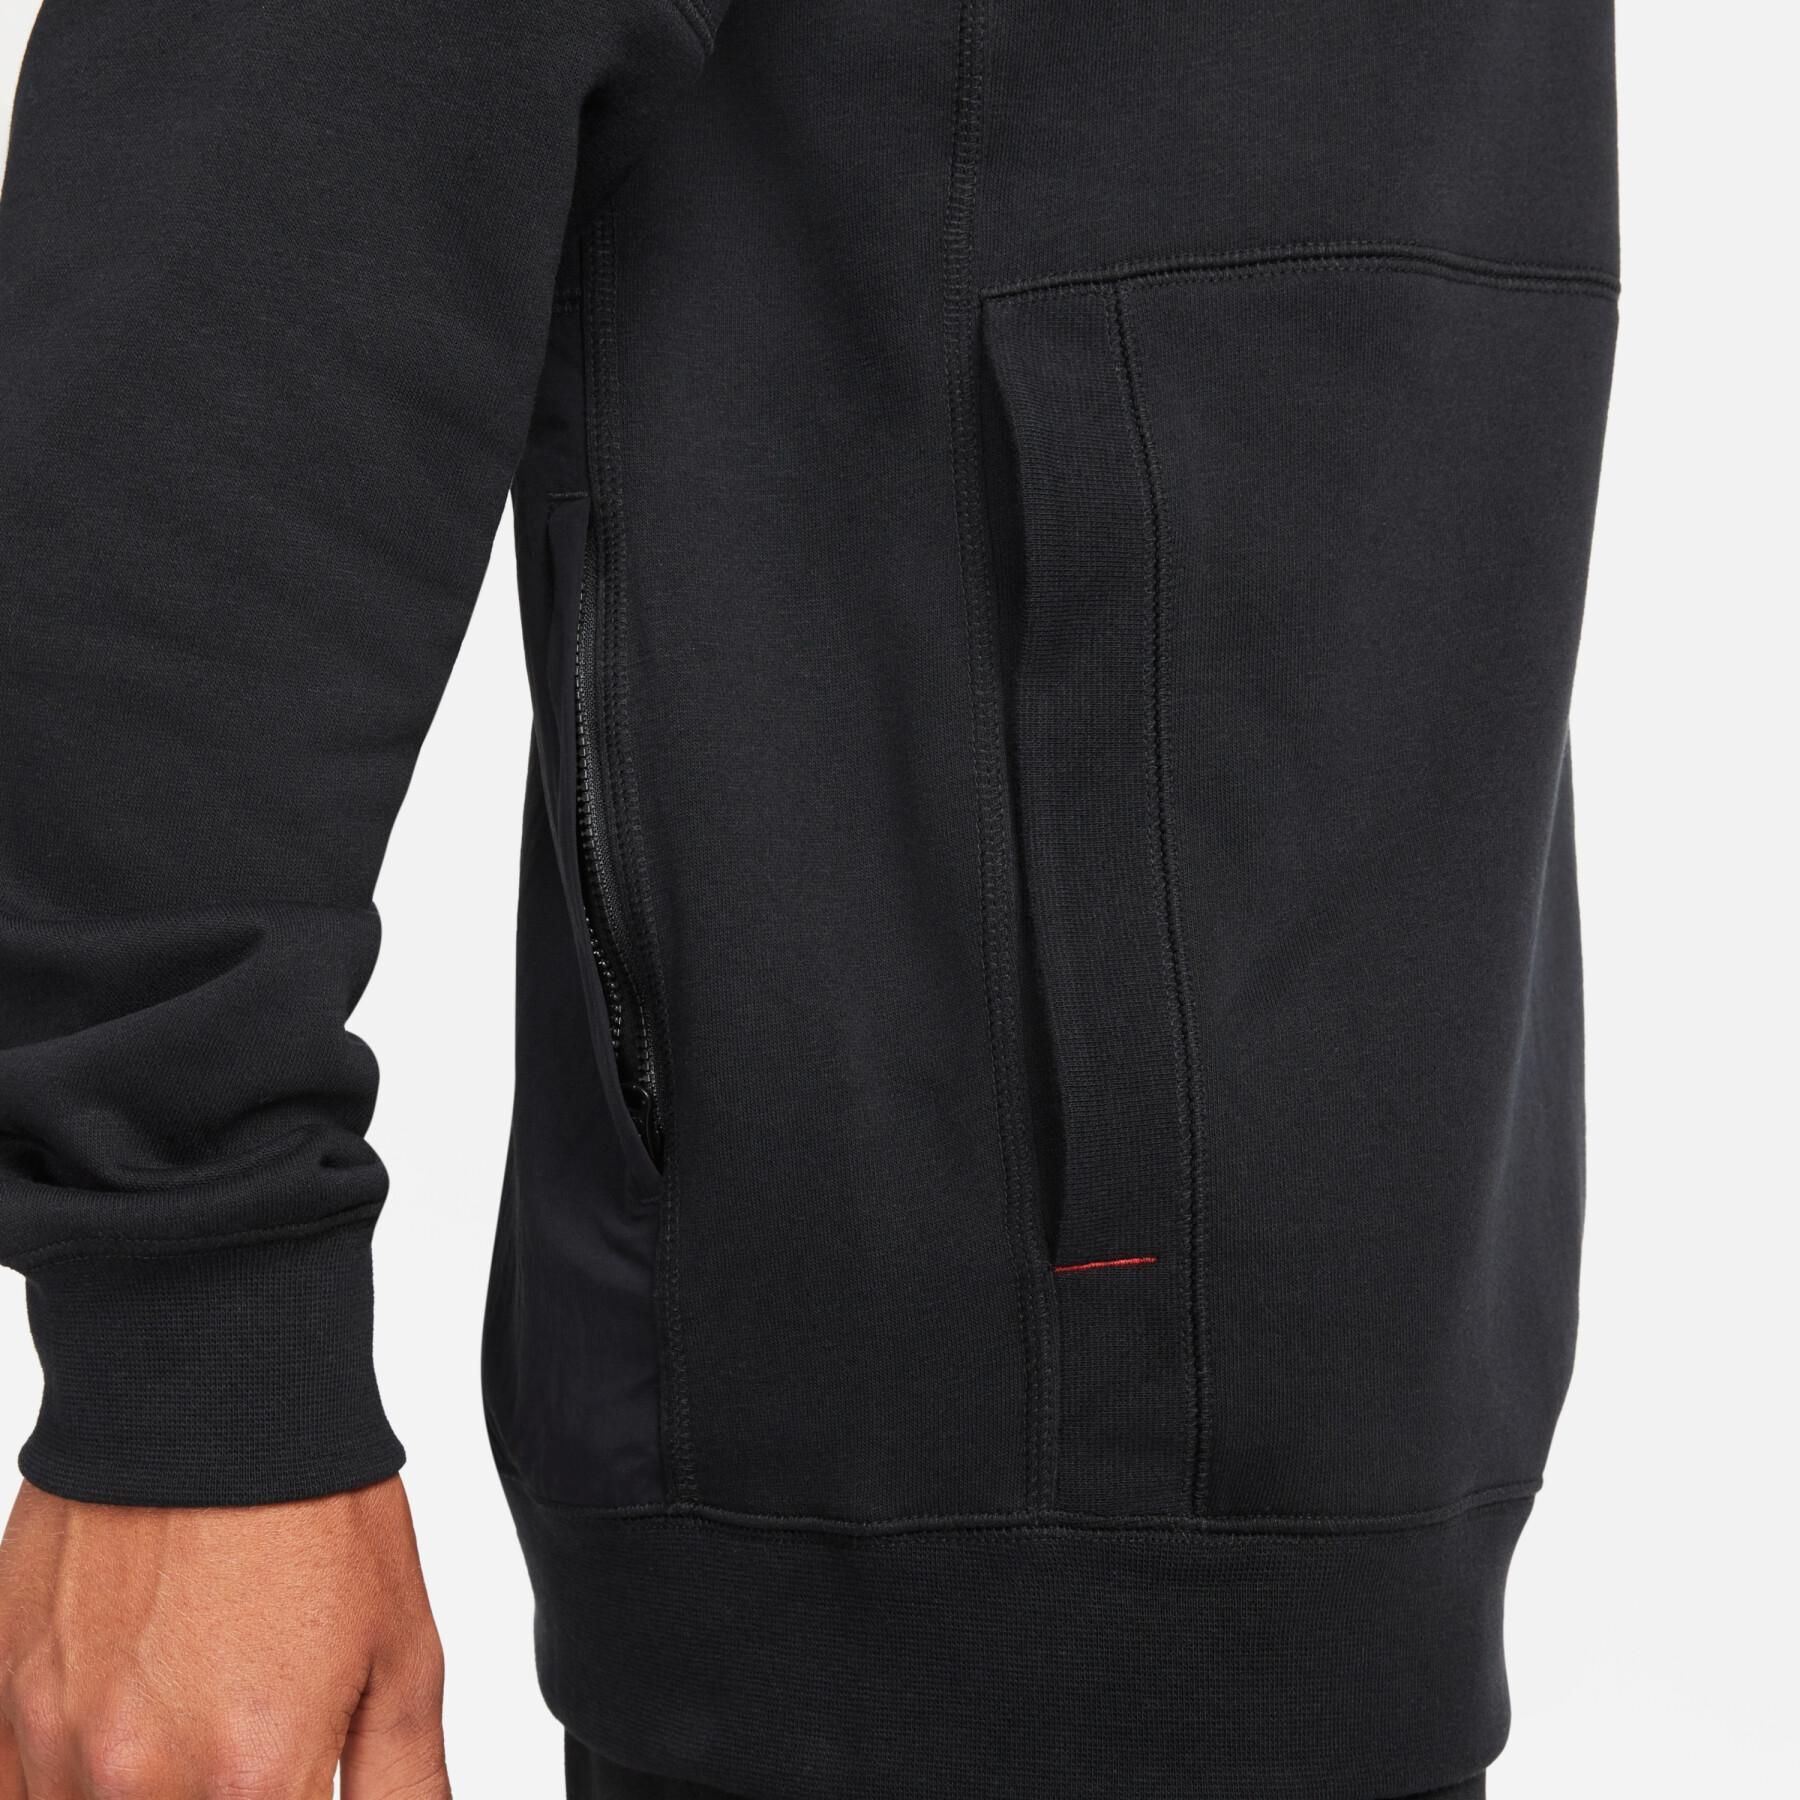 Hooded sweatshirt Nike Fleece